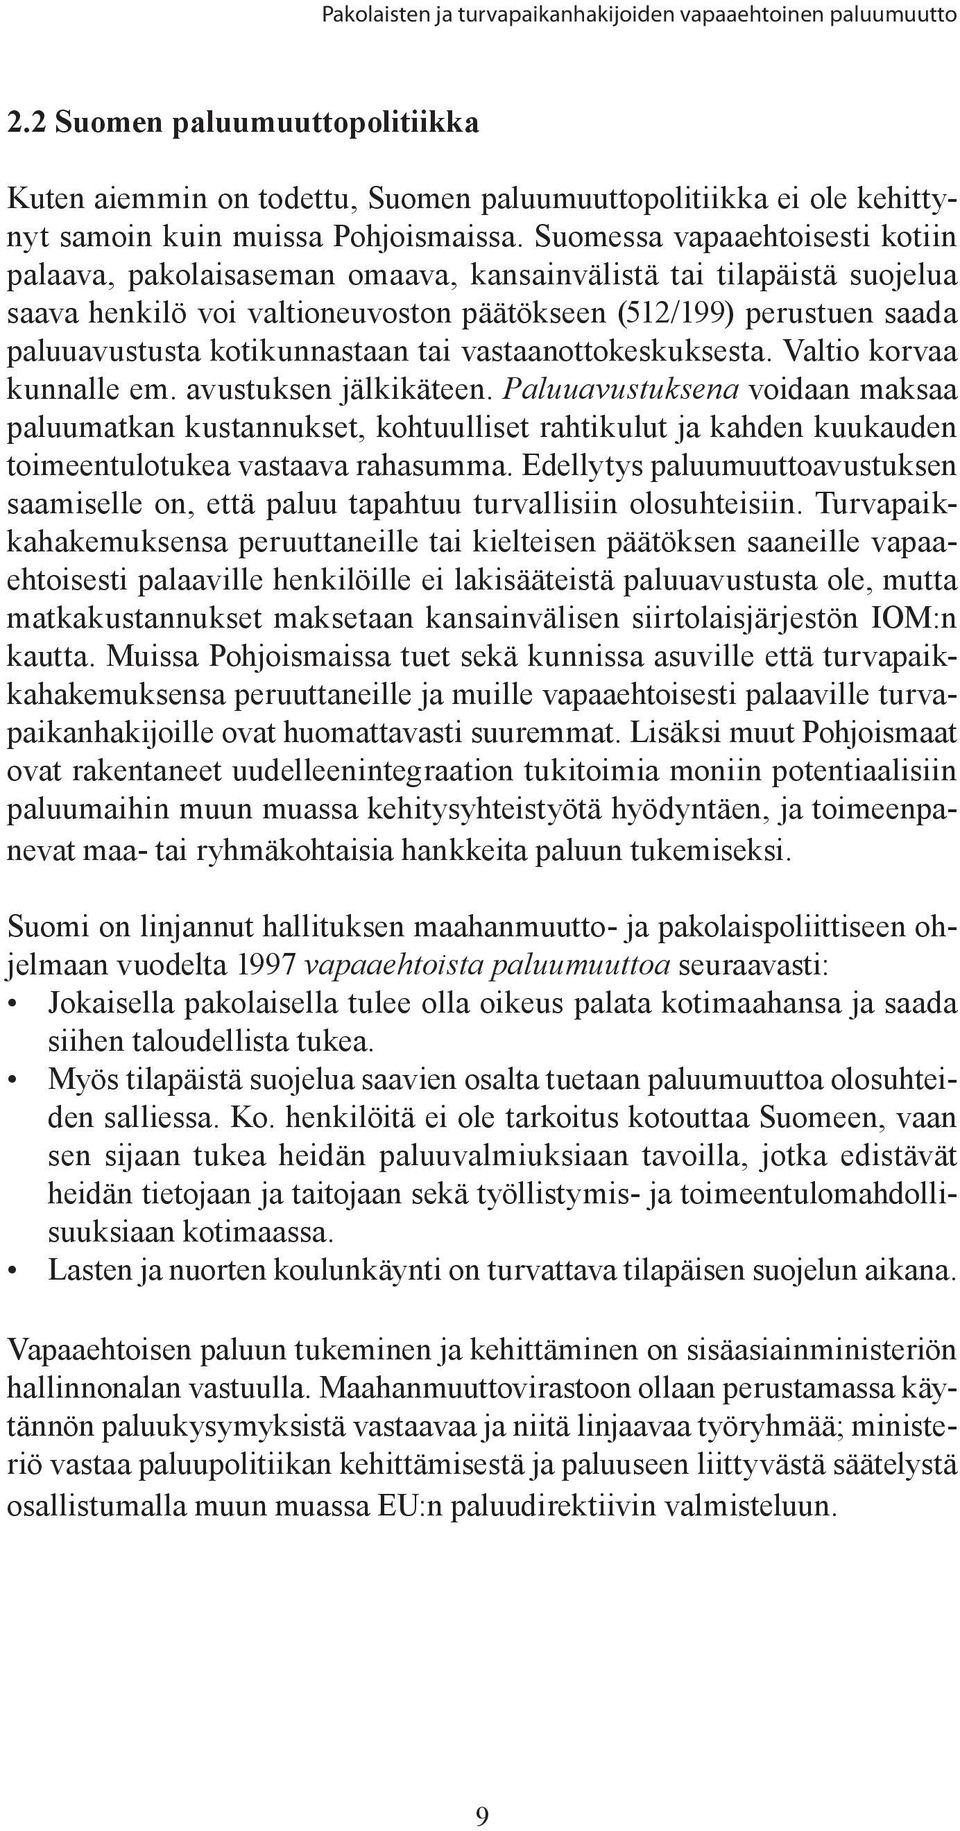 Suomessa vapaaehtoisesti kotiin palaava, pakolaisaseman omaava, kansainvälistä tai tilapäistä suojelua saava henkilö voi valtioneuvoston päätökseen (512/199) perustuen saada paluuavustusta